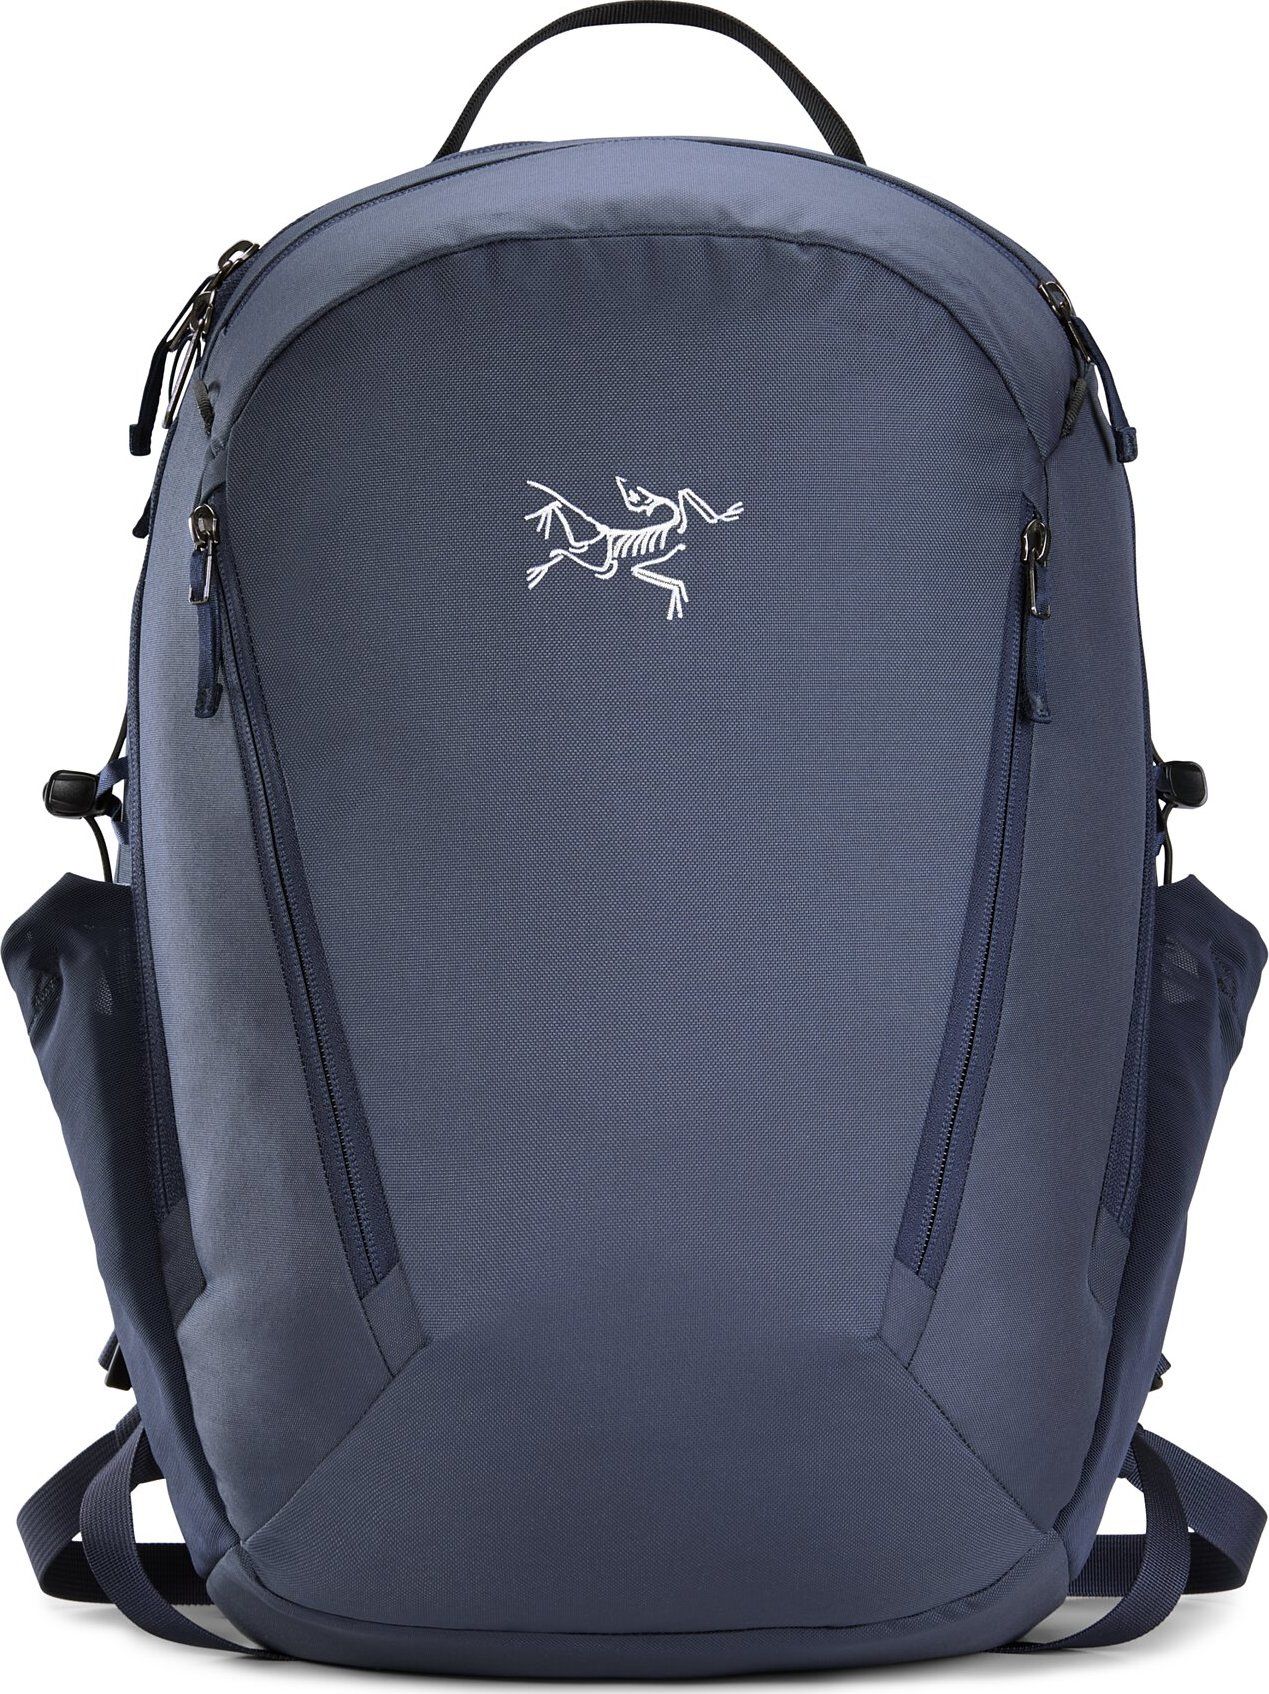 Mantis 26L Backpack Black Sapphire | Buy Mantis 26L Backpack Black